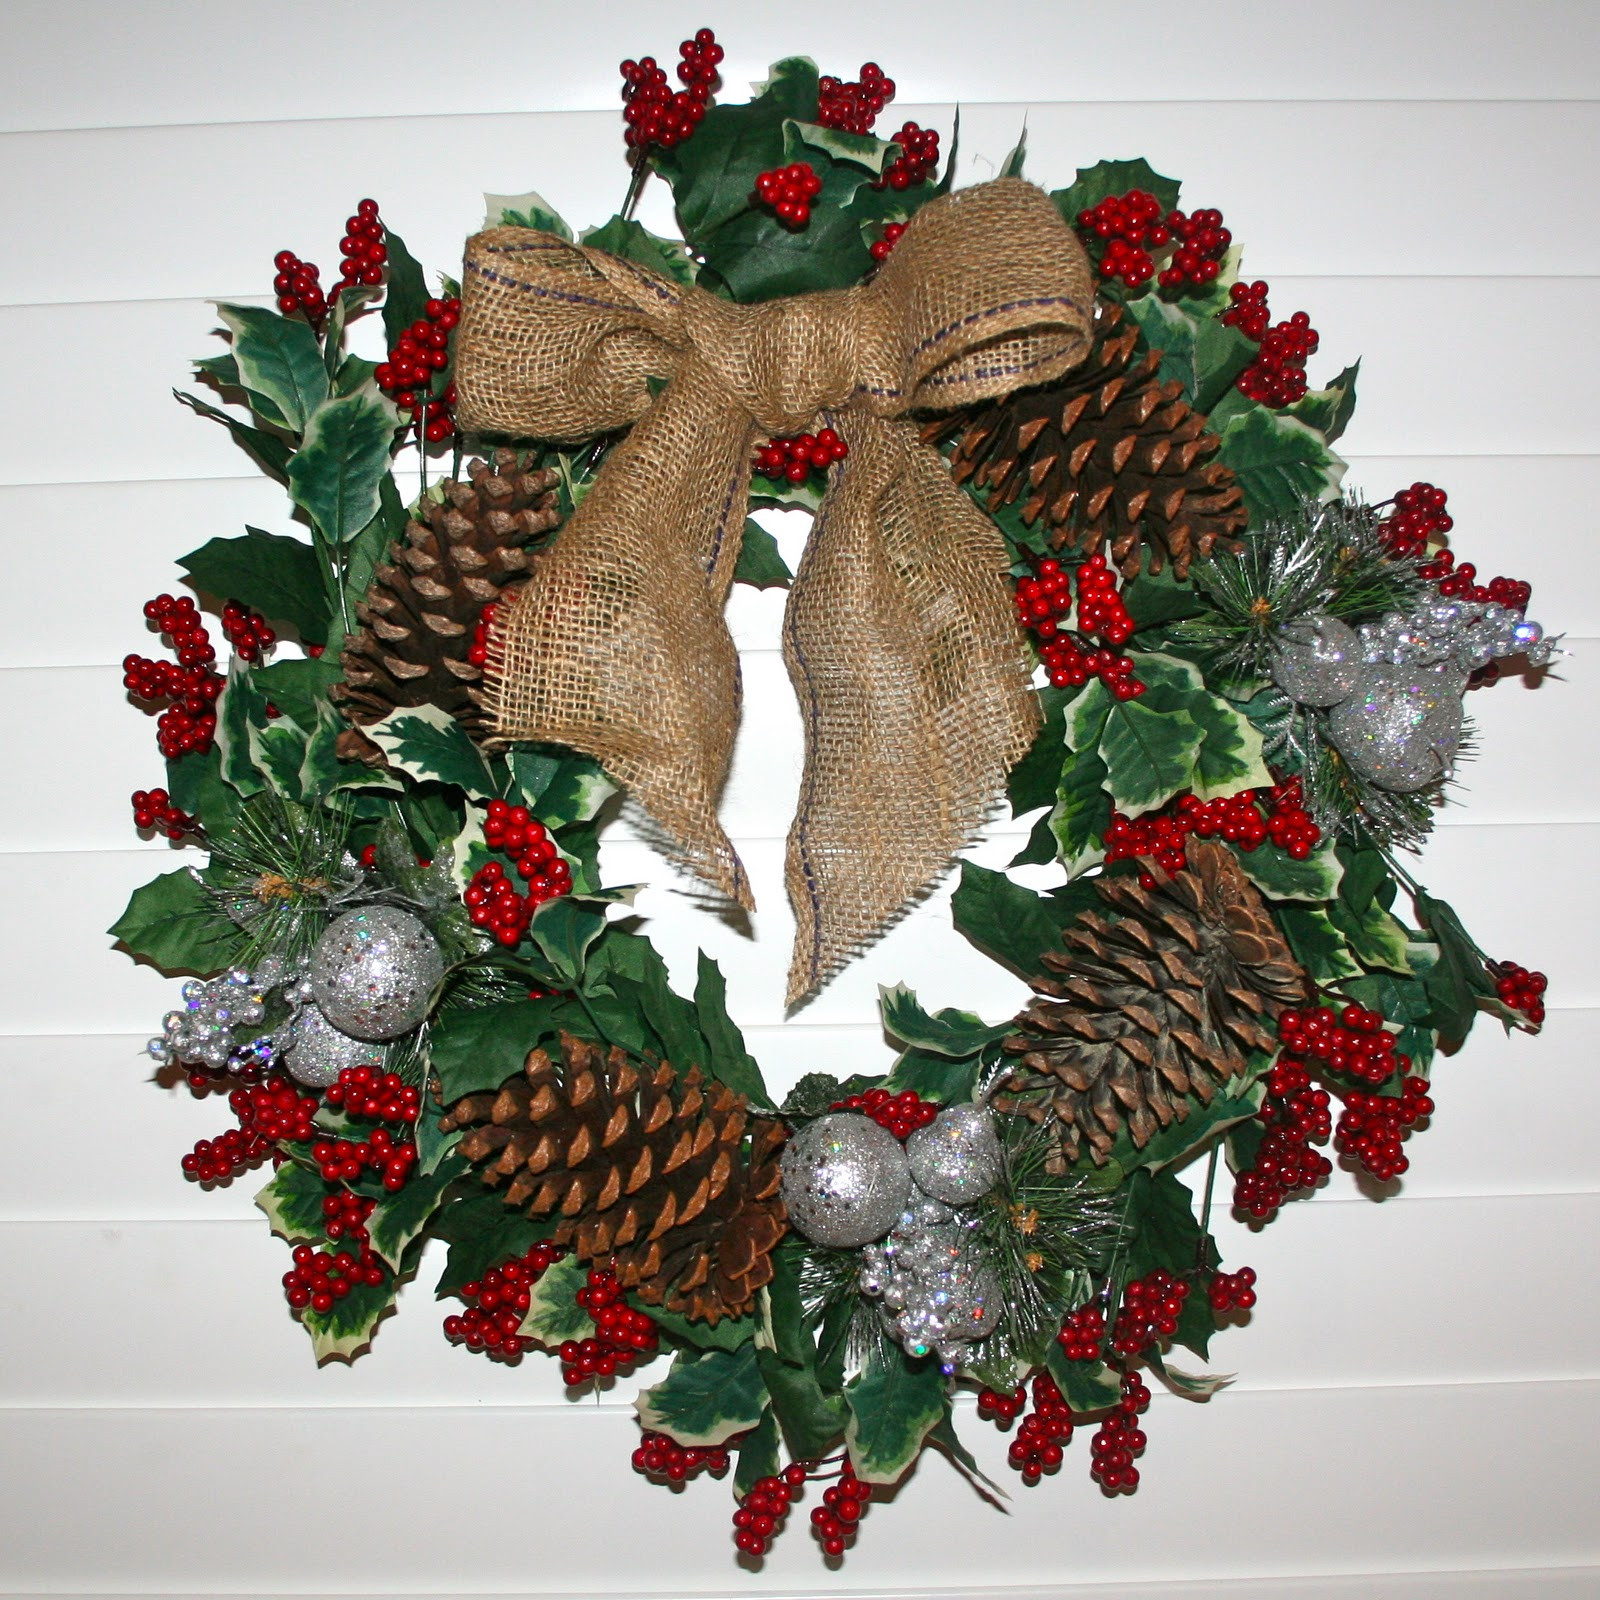 DIY Christmas Wreaths
 Divine DIY Christmas Wreath